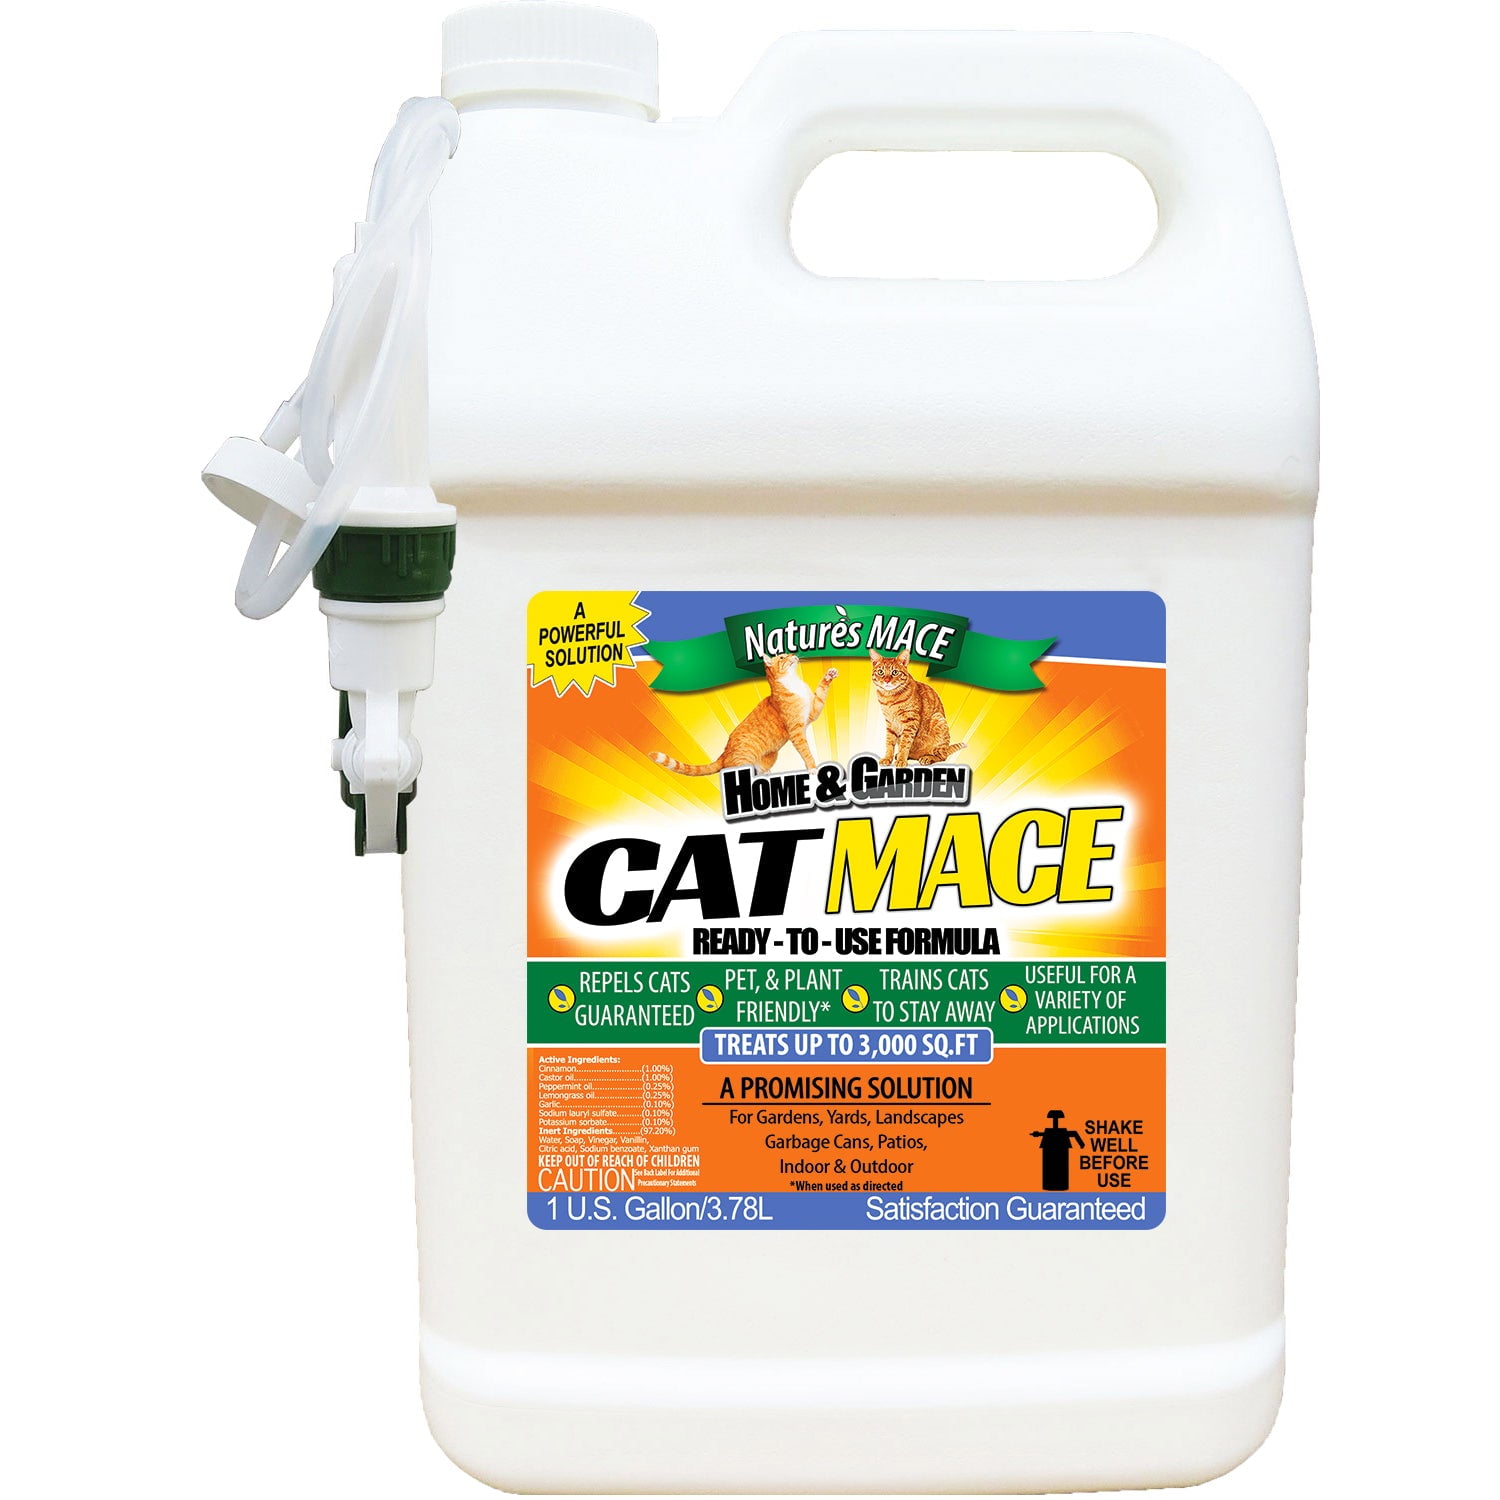 Catrtu992003 1 Gal Formulated Cat Repellent